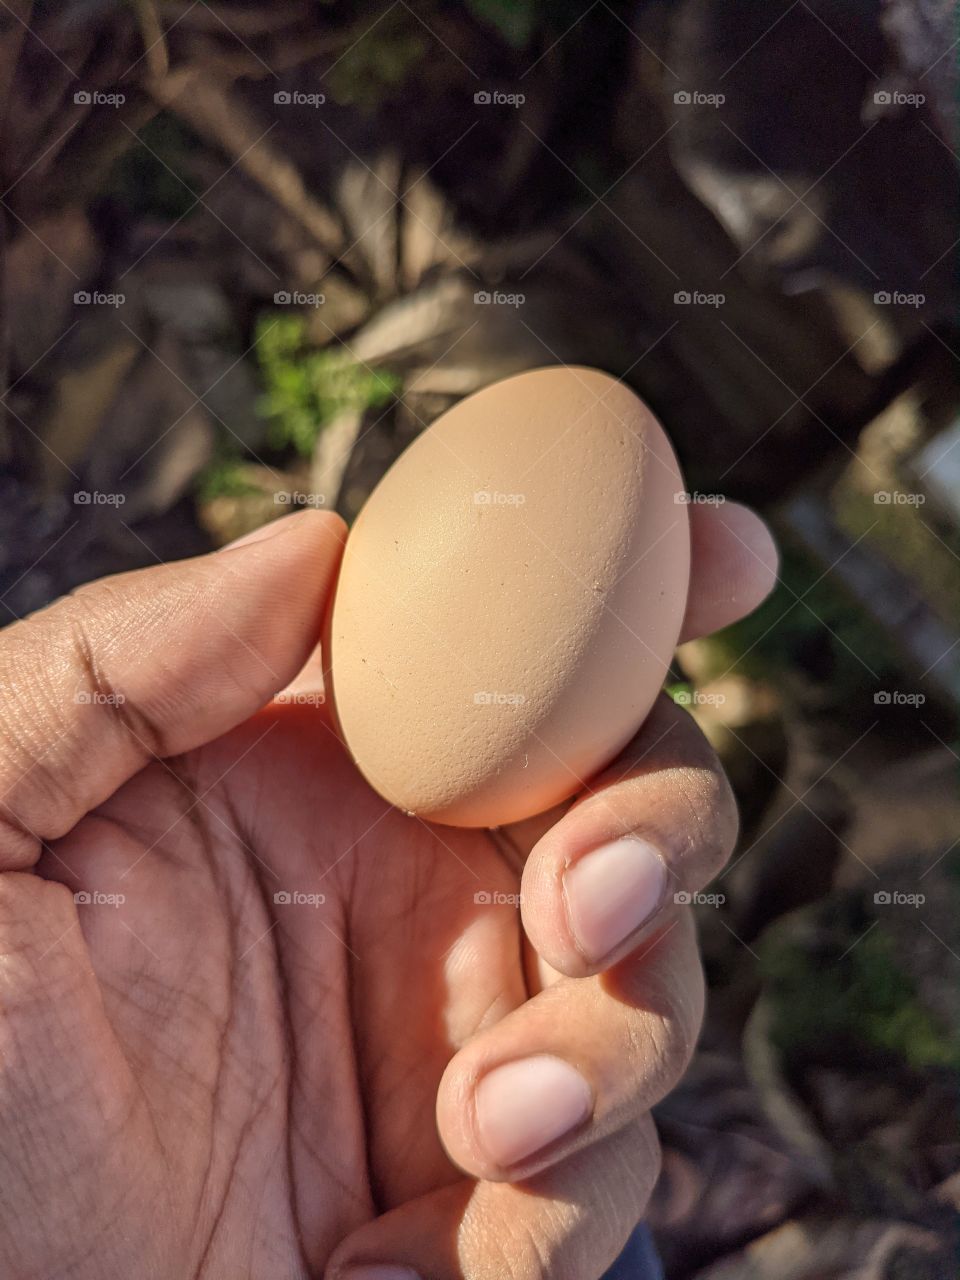 Egg of karimkozhi India breed hen